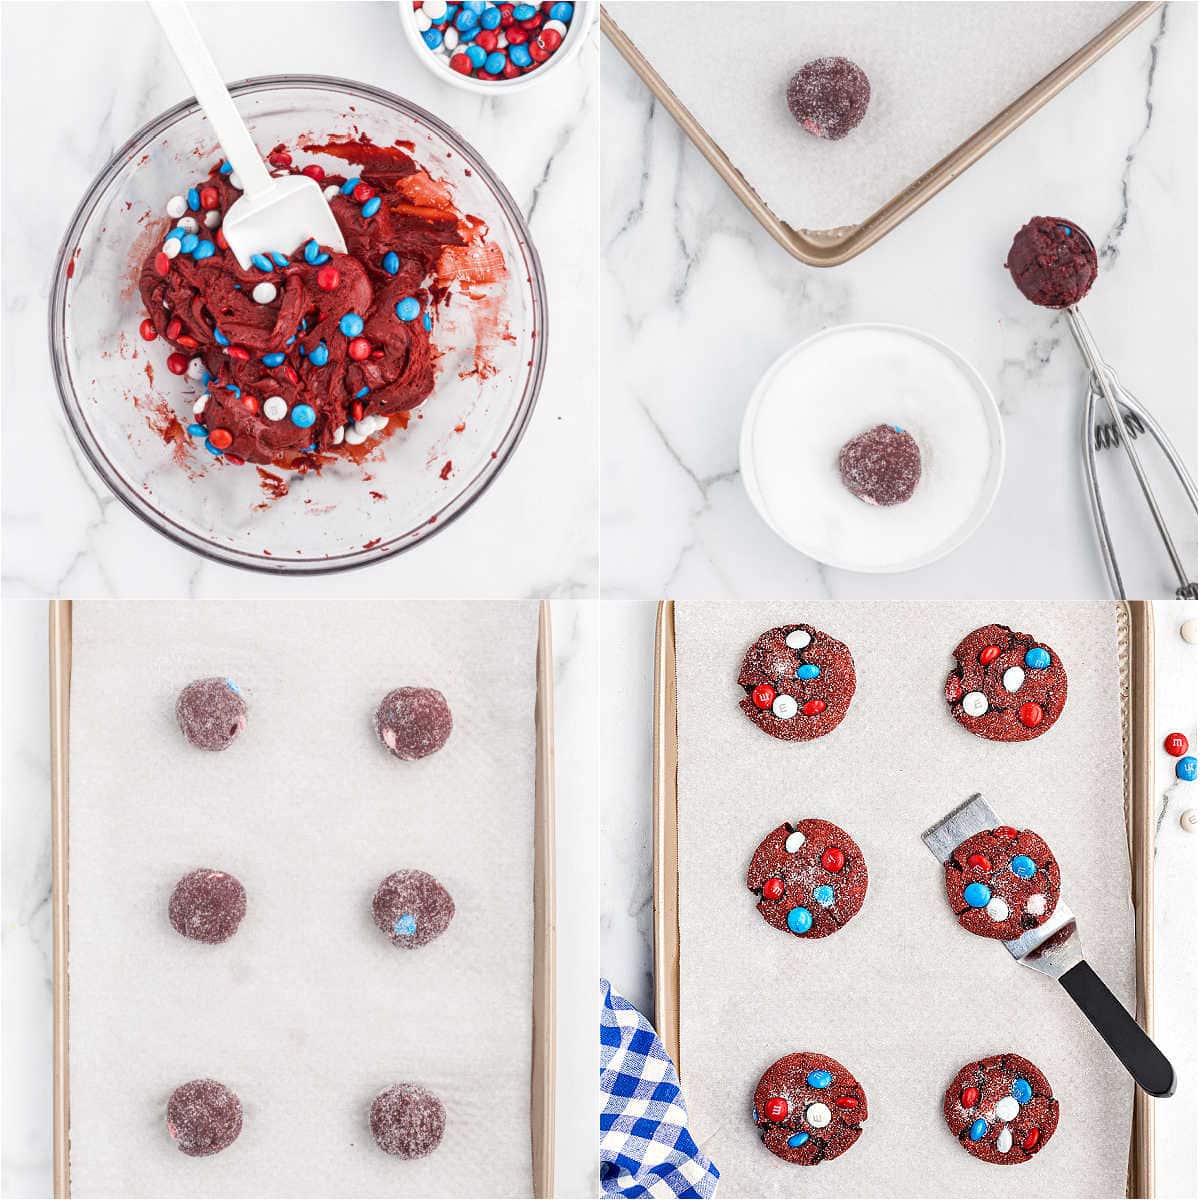 Schritt-für-Schritt-Fotos zeigen, wie man Kekse mit Kuchenmischung macht.